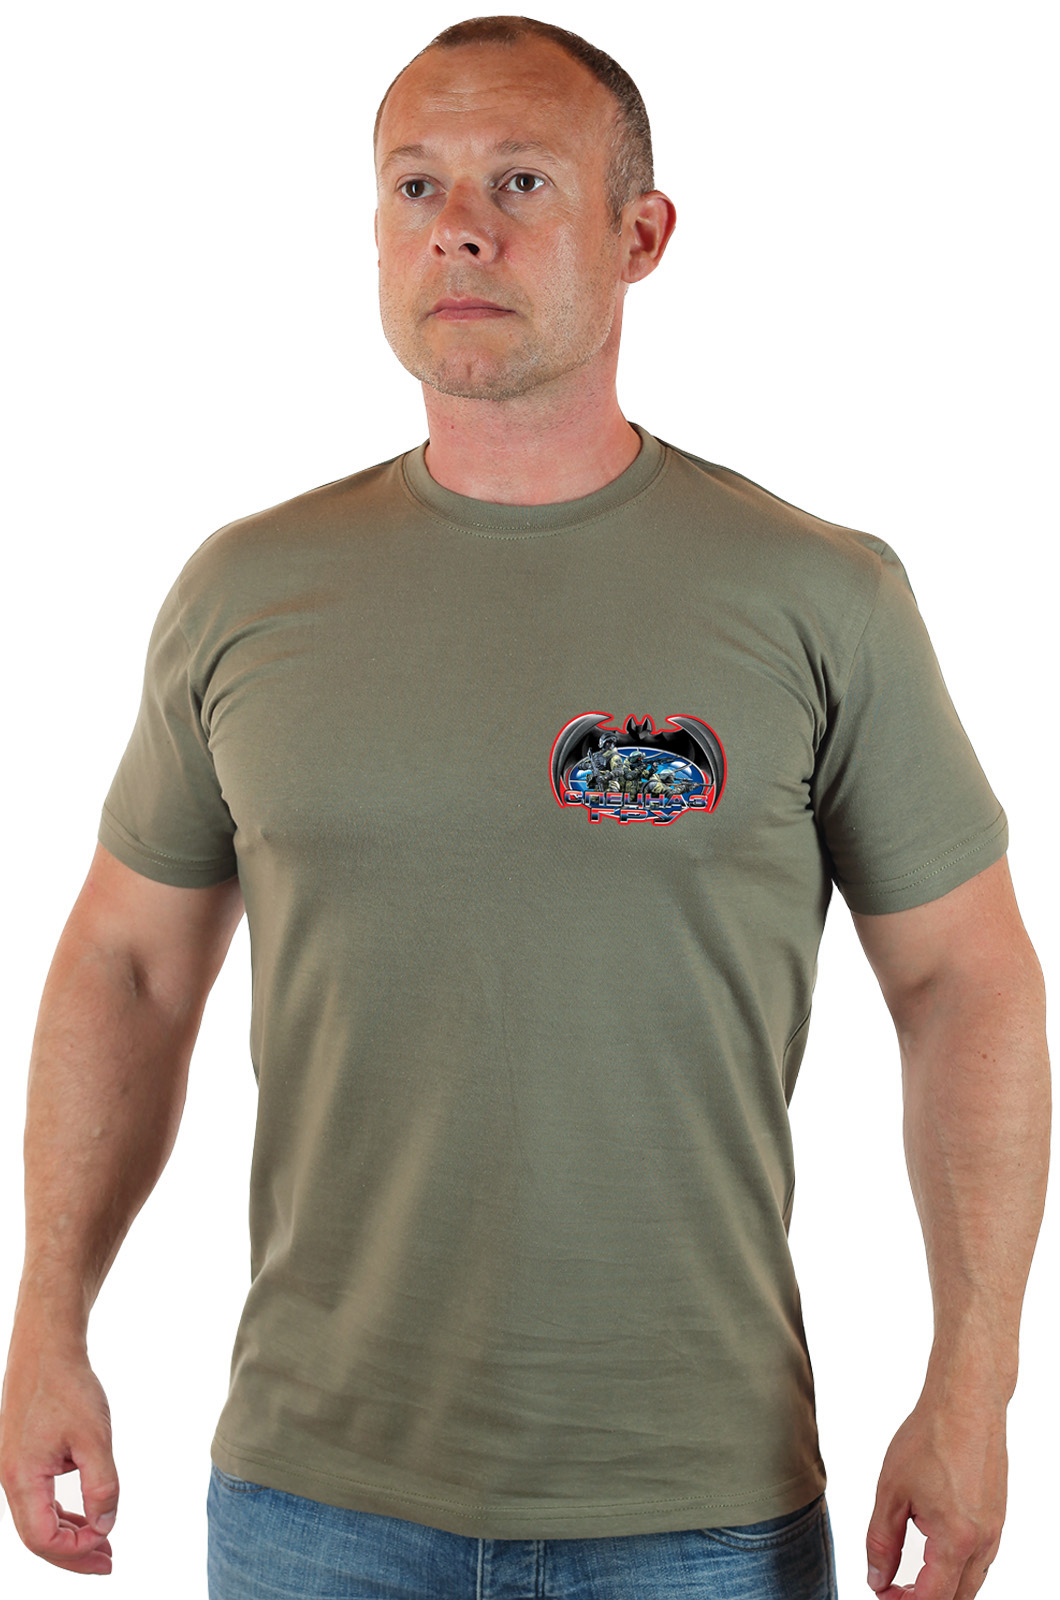 Мужская футболка с нашивкой Спецназ ГРУ